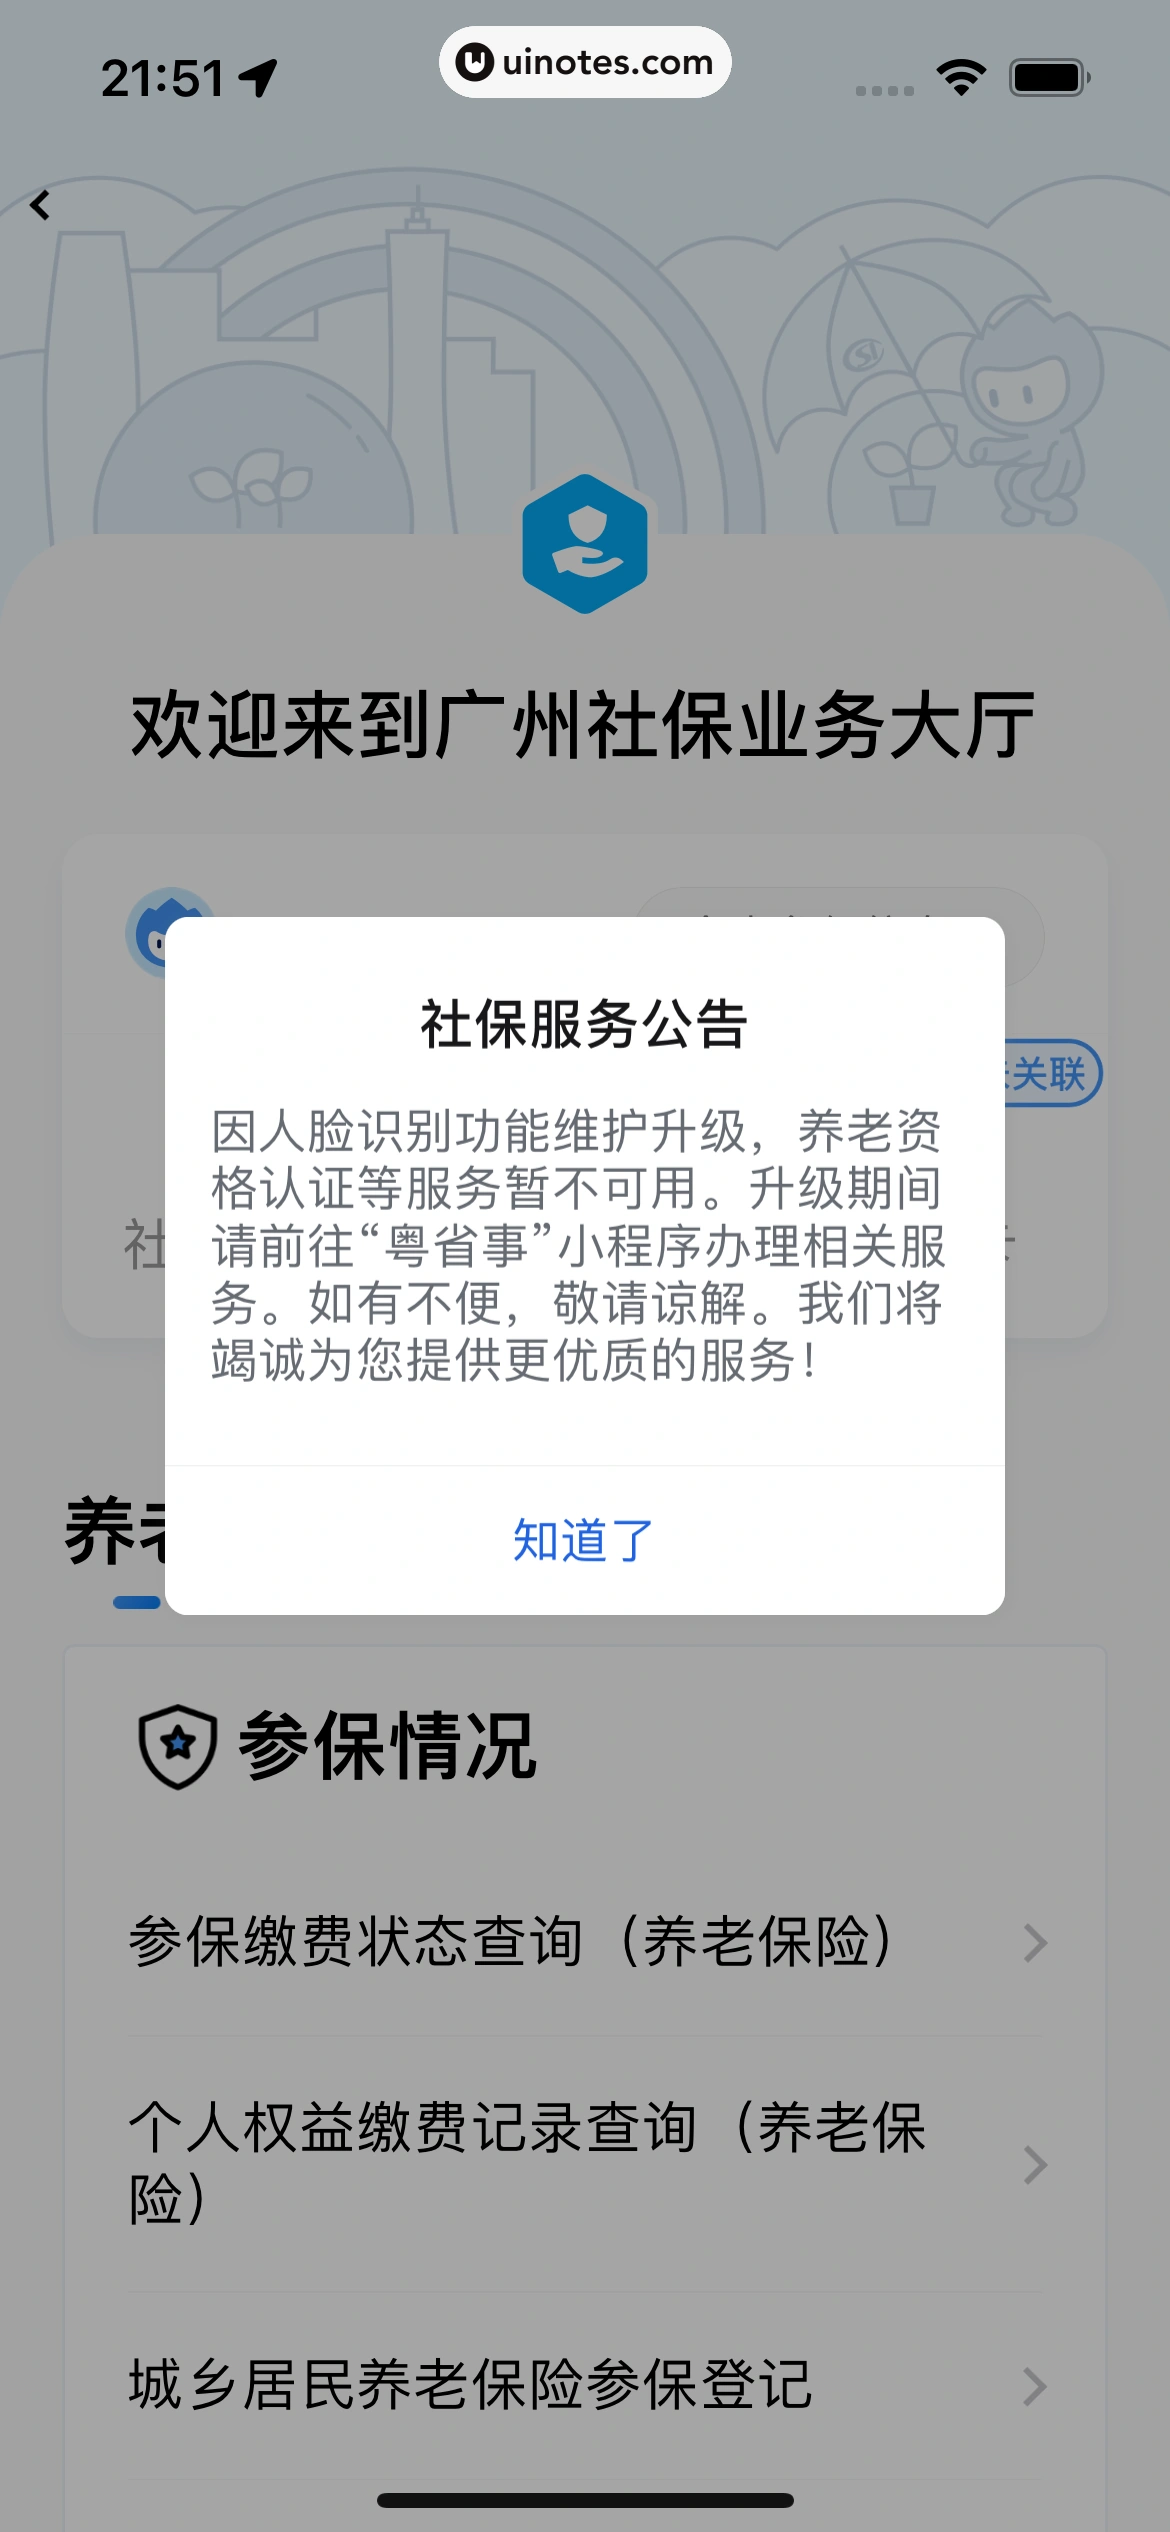 粤省事 App 截图 074 - UI Notes